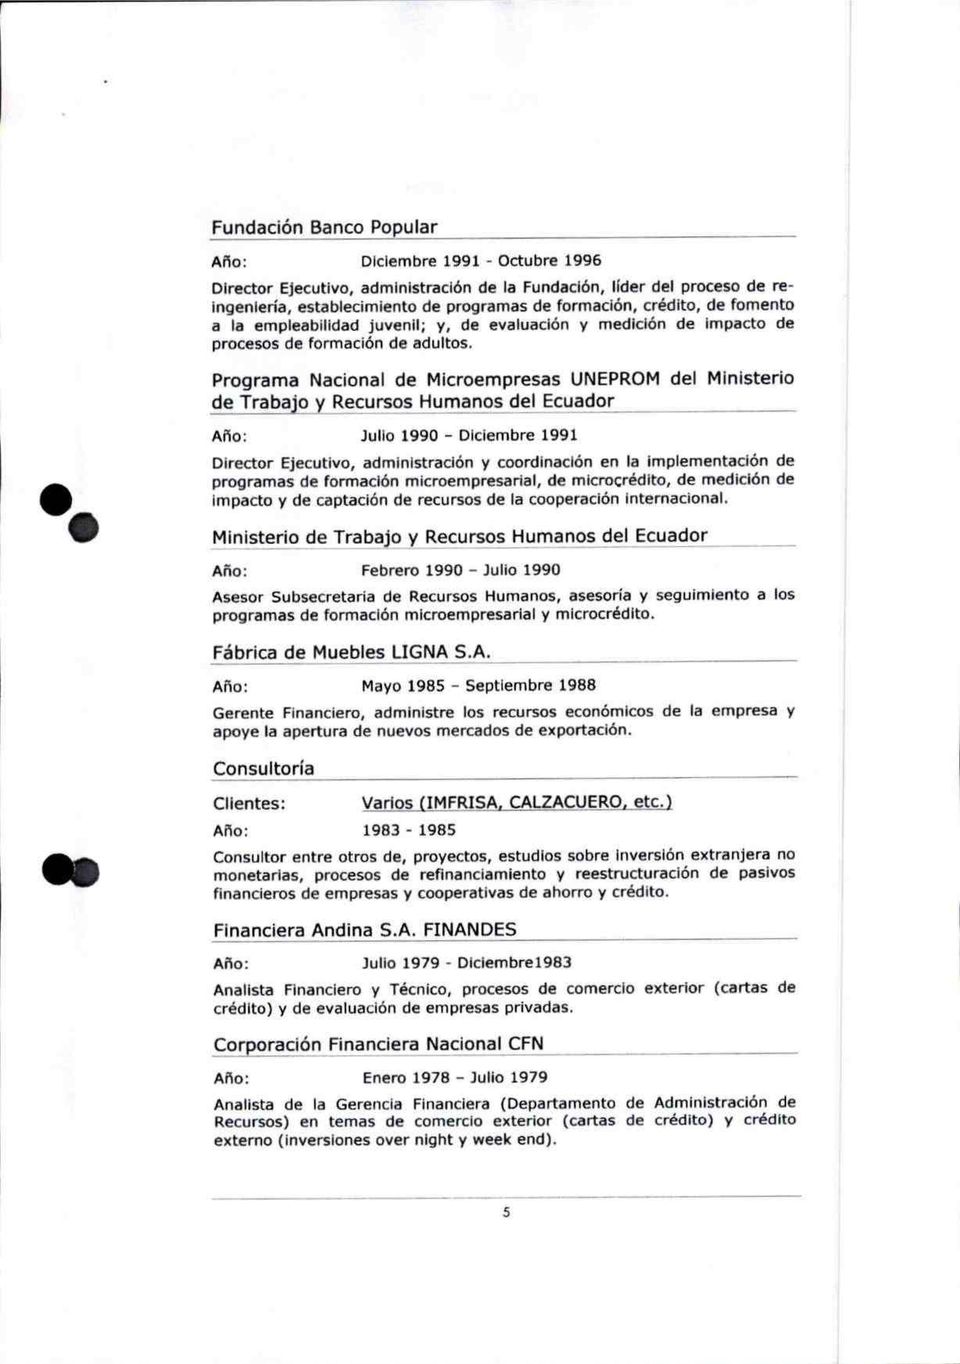 Programa Nacional de Microempresas UNEPROM del Ministerio de Trabajo y Recursos Humanos del Ecuador OIL Año: Julio 1990 - Diciembre 1991 Director Ejecutivo, administración y coordinación en la